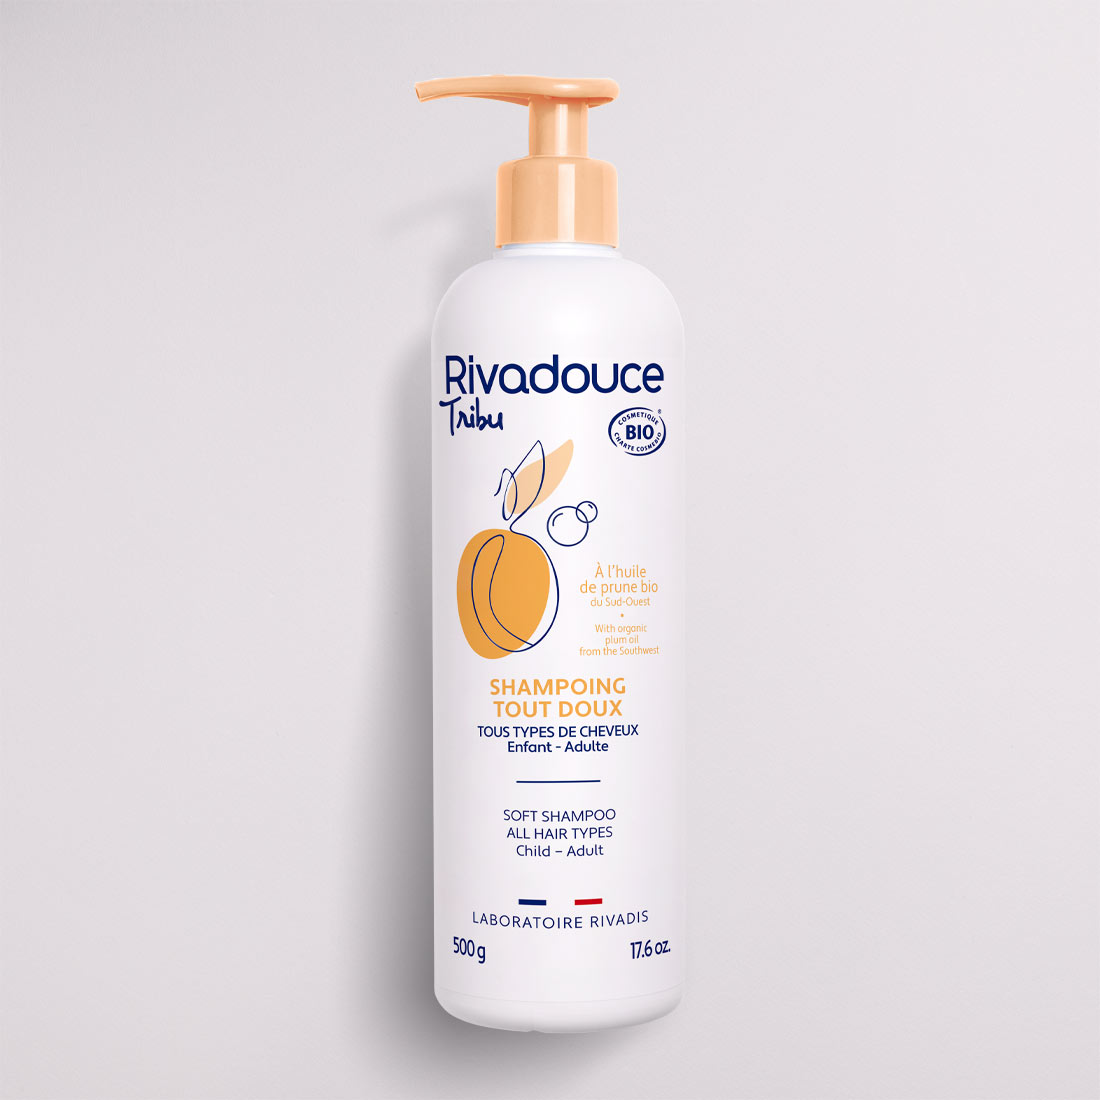 Shampoing Doux: Pour des cheveux naturels propres, soyeux et revitalis –  2mcosmetics